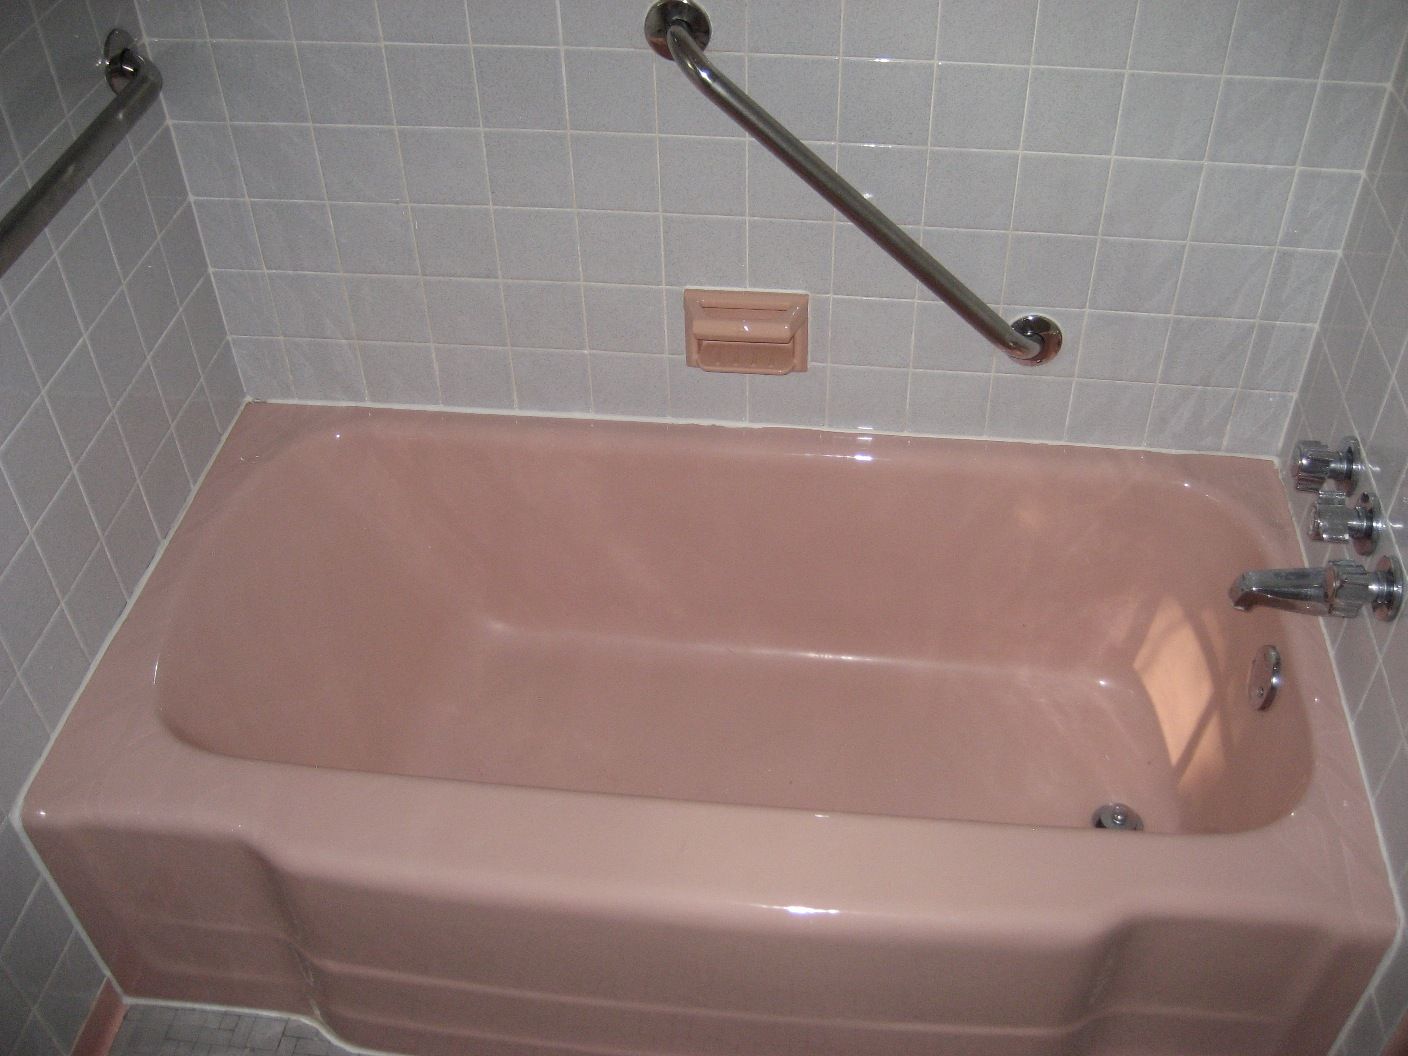 My pink bathtub!